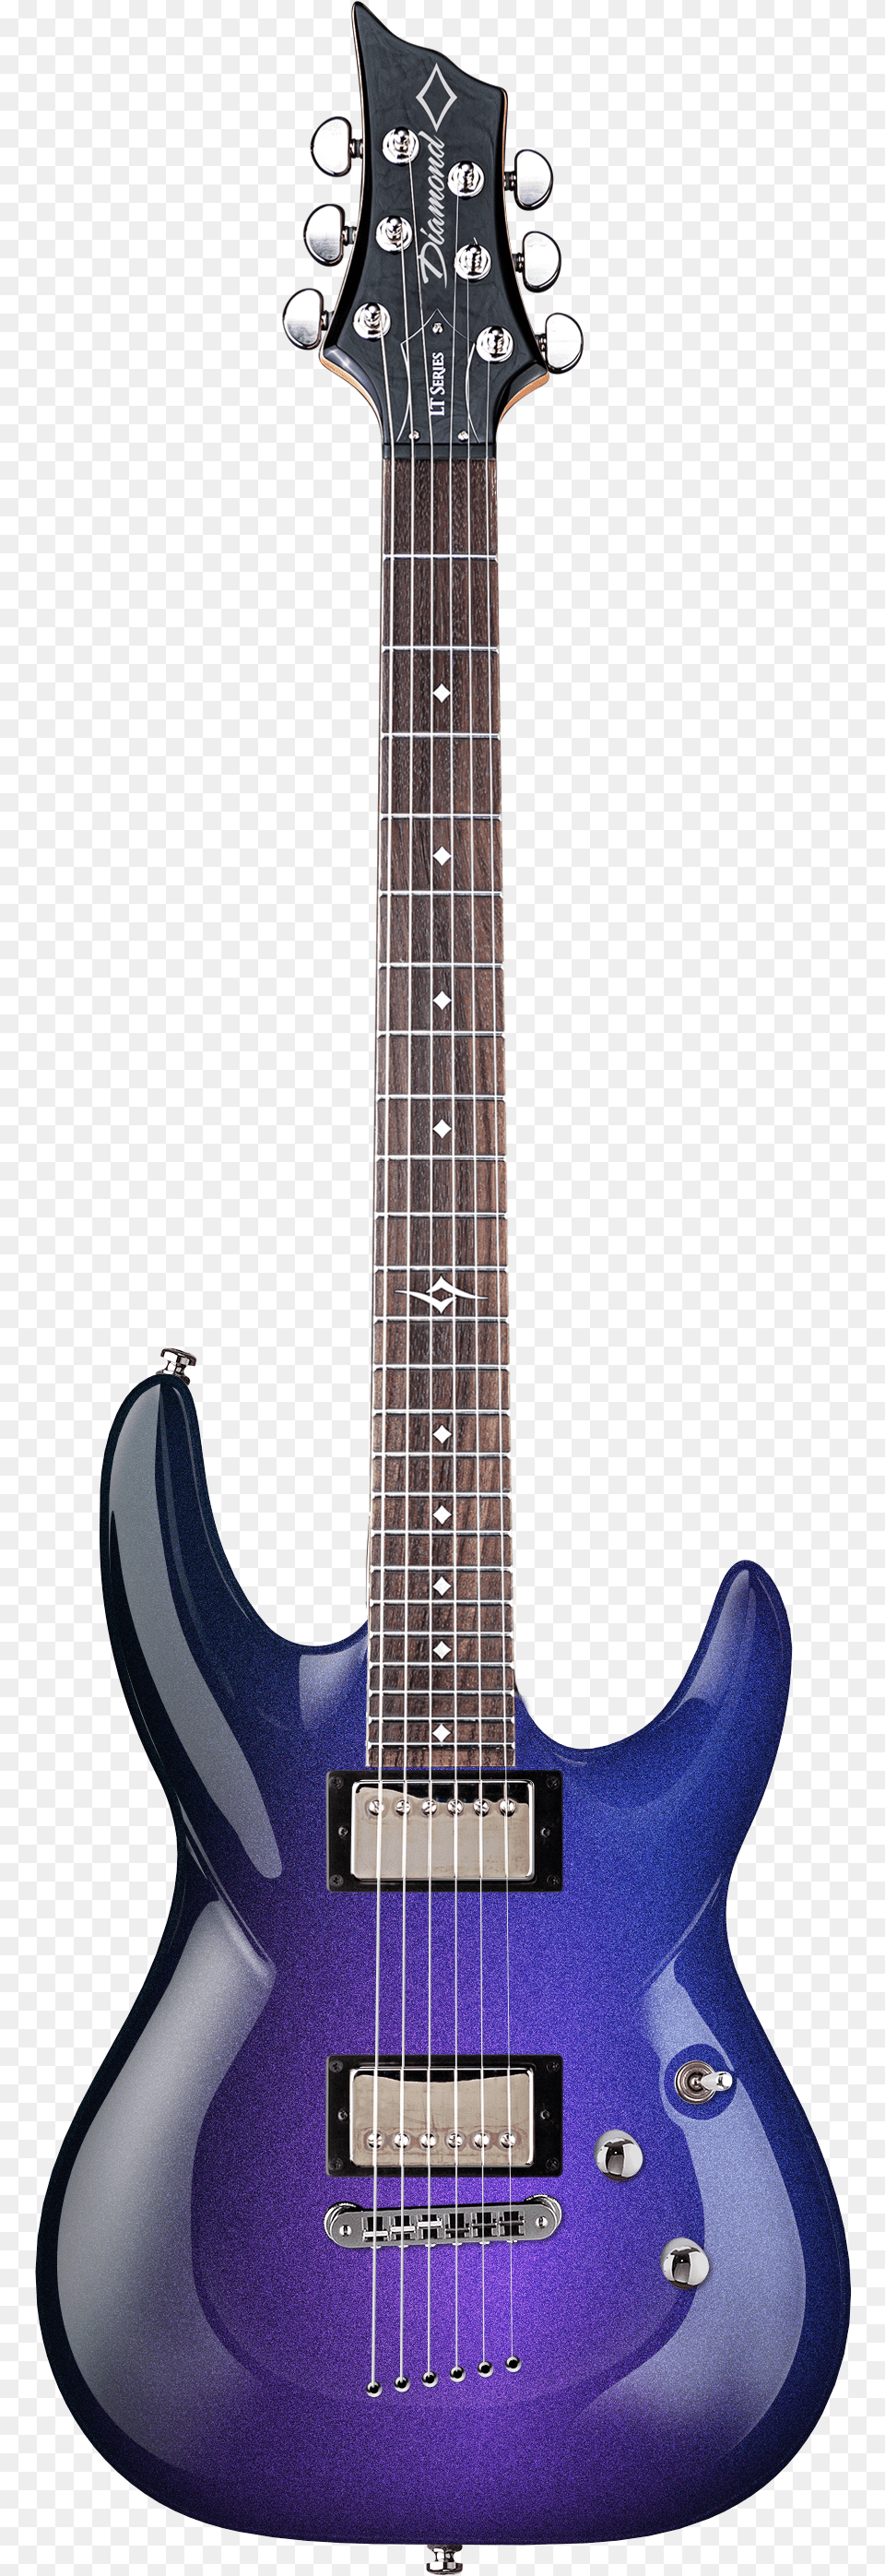 Purple Galaxy, Bass Guitar, Guitar, Musical Instrument Png